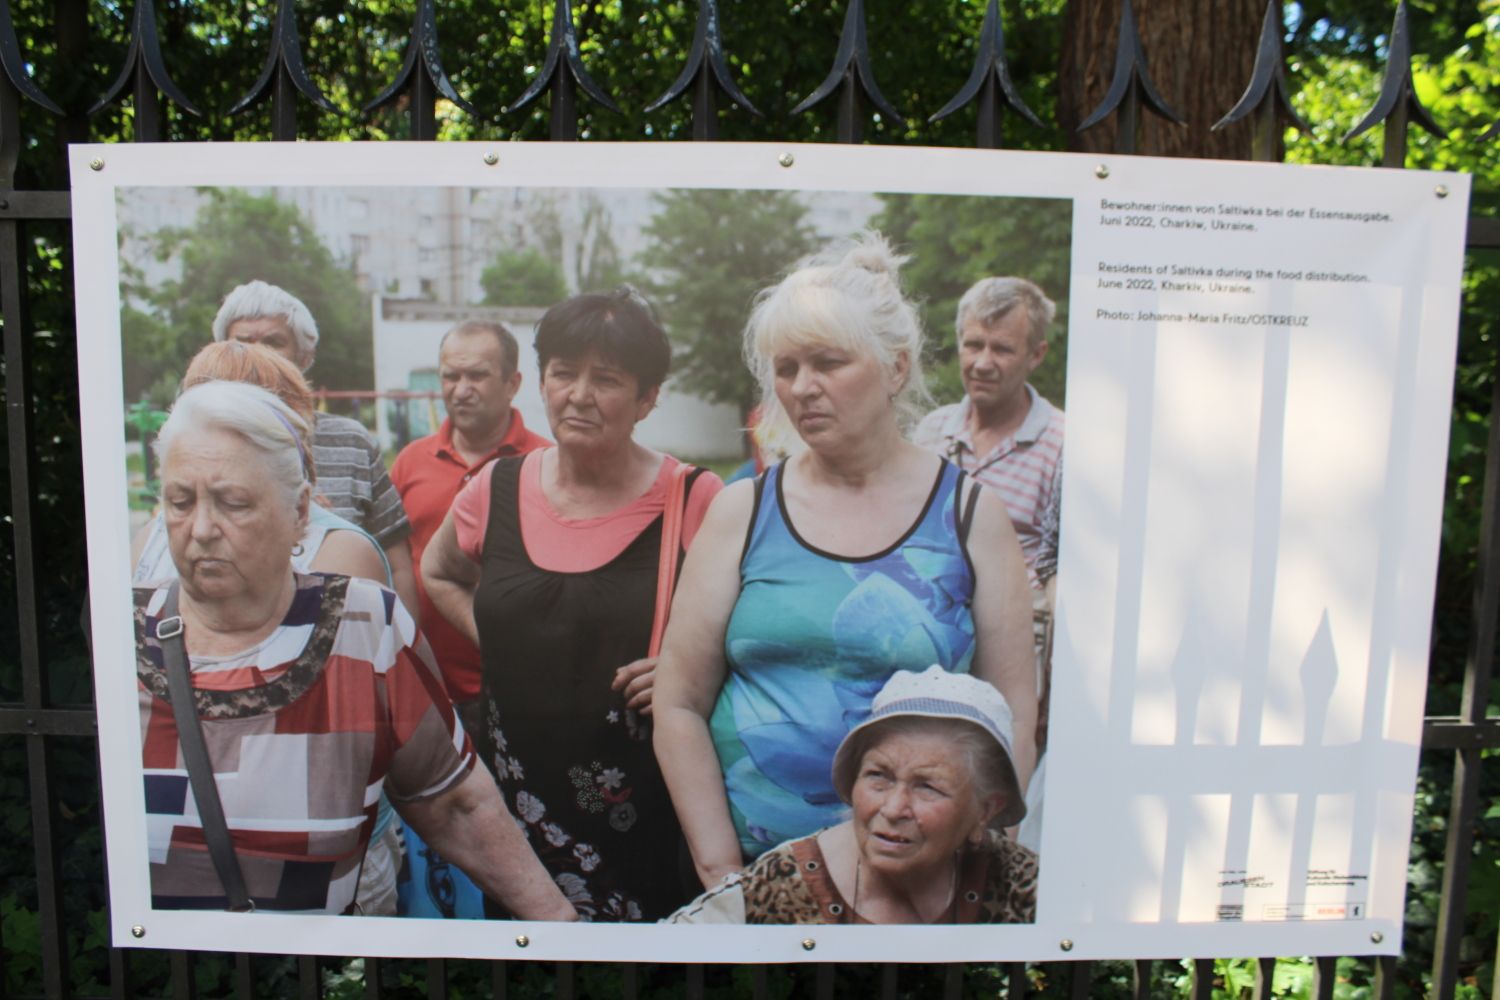 Bewohner von Saltiwka bei der Essensausgabe. Juni 2022, Charkiw. Foto: Johanna-Maria Fritz/OSTKREUZ